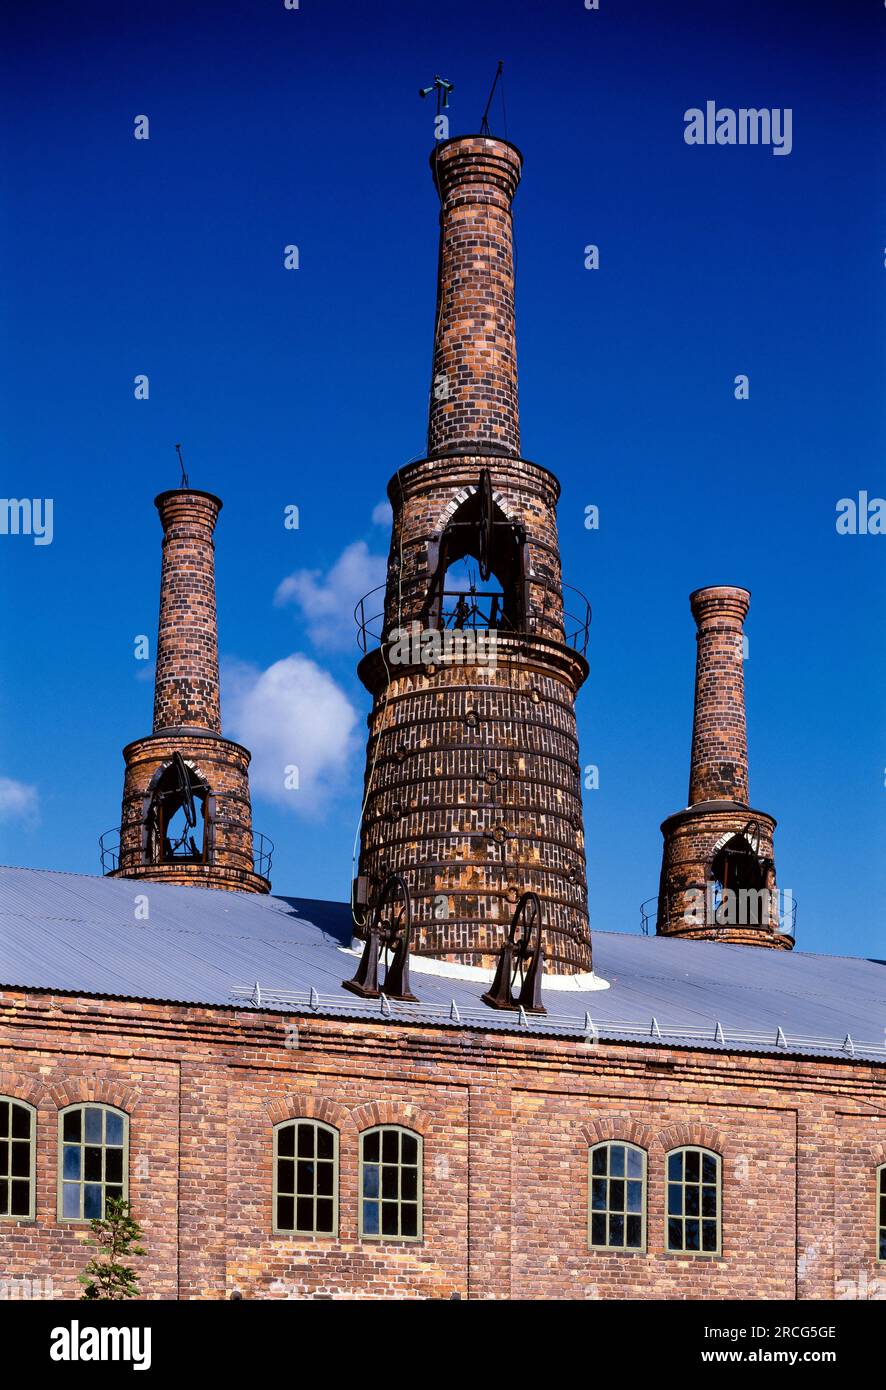 Iron works, Gavle, Sweden Stock Photo